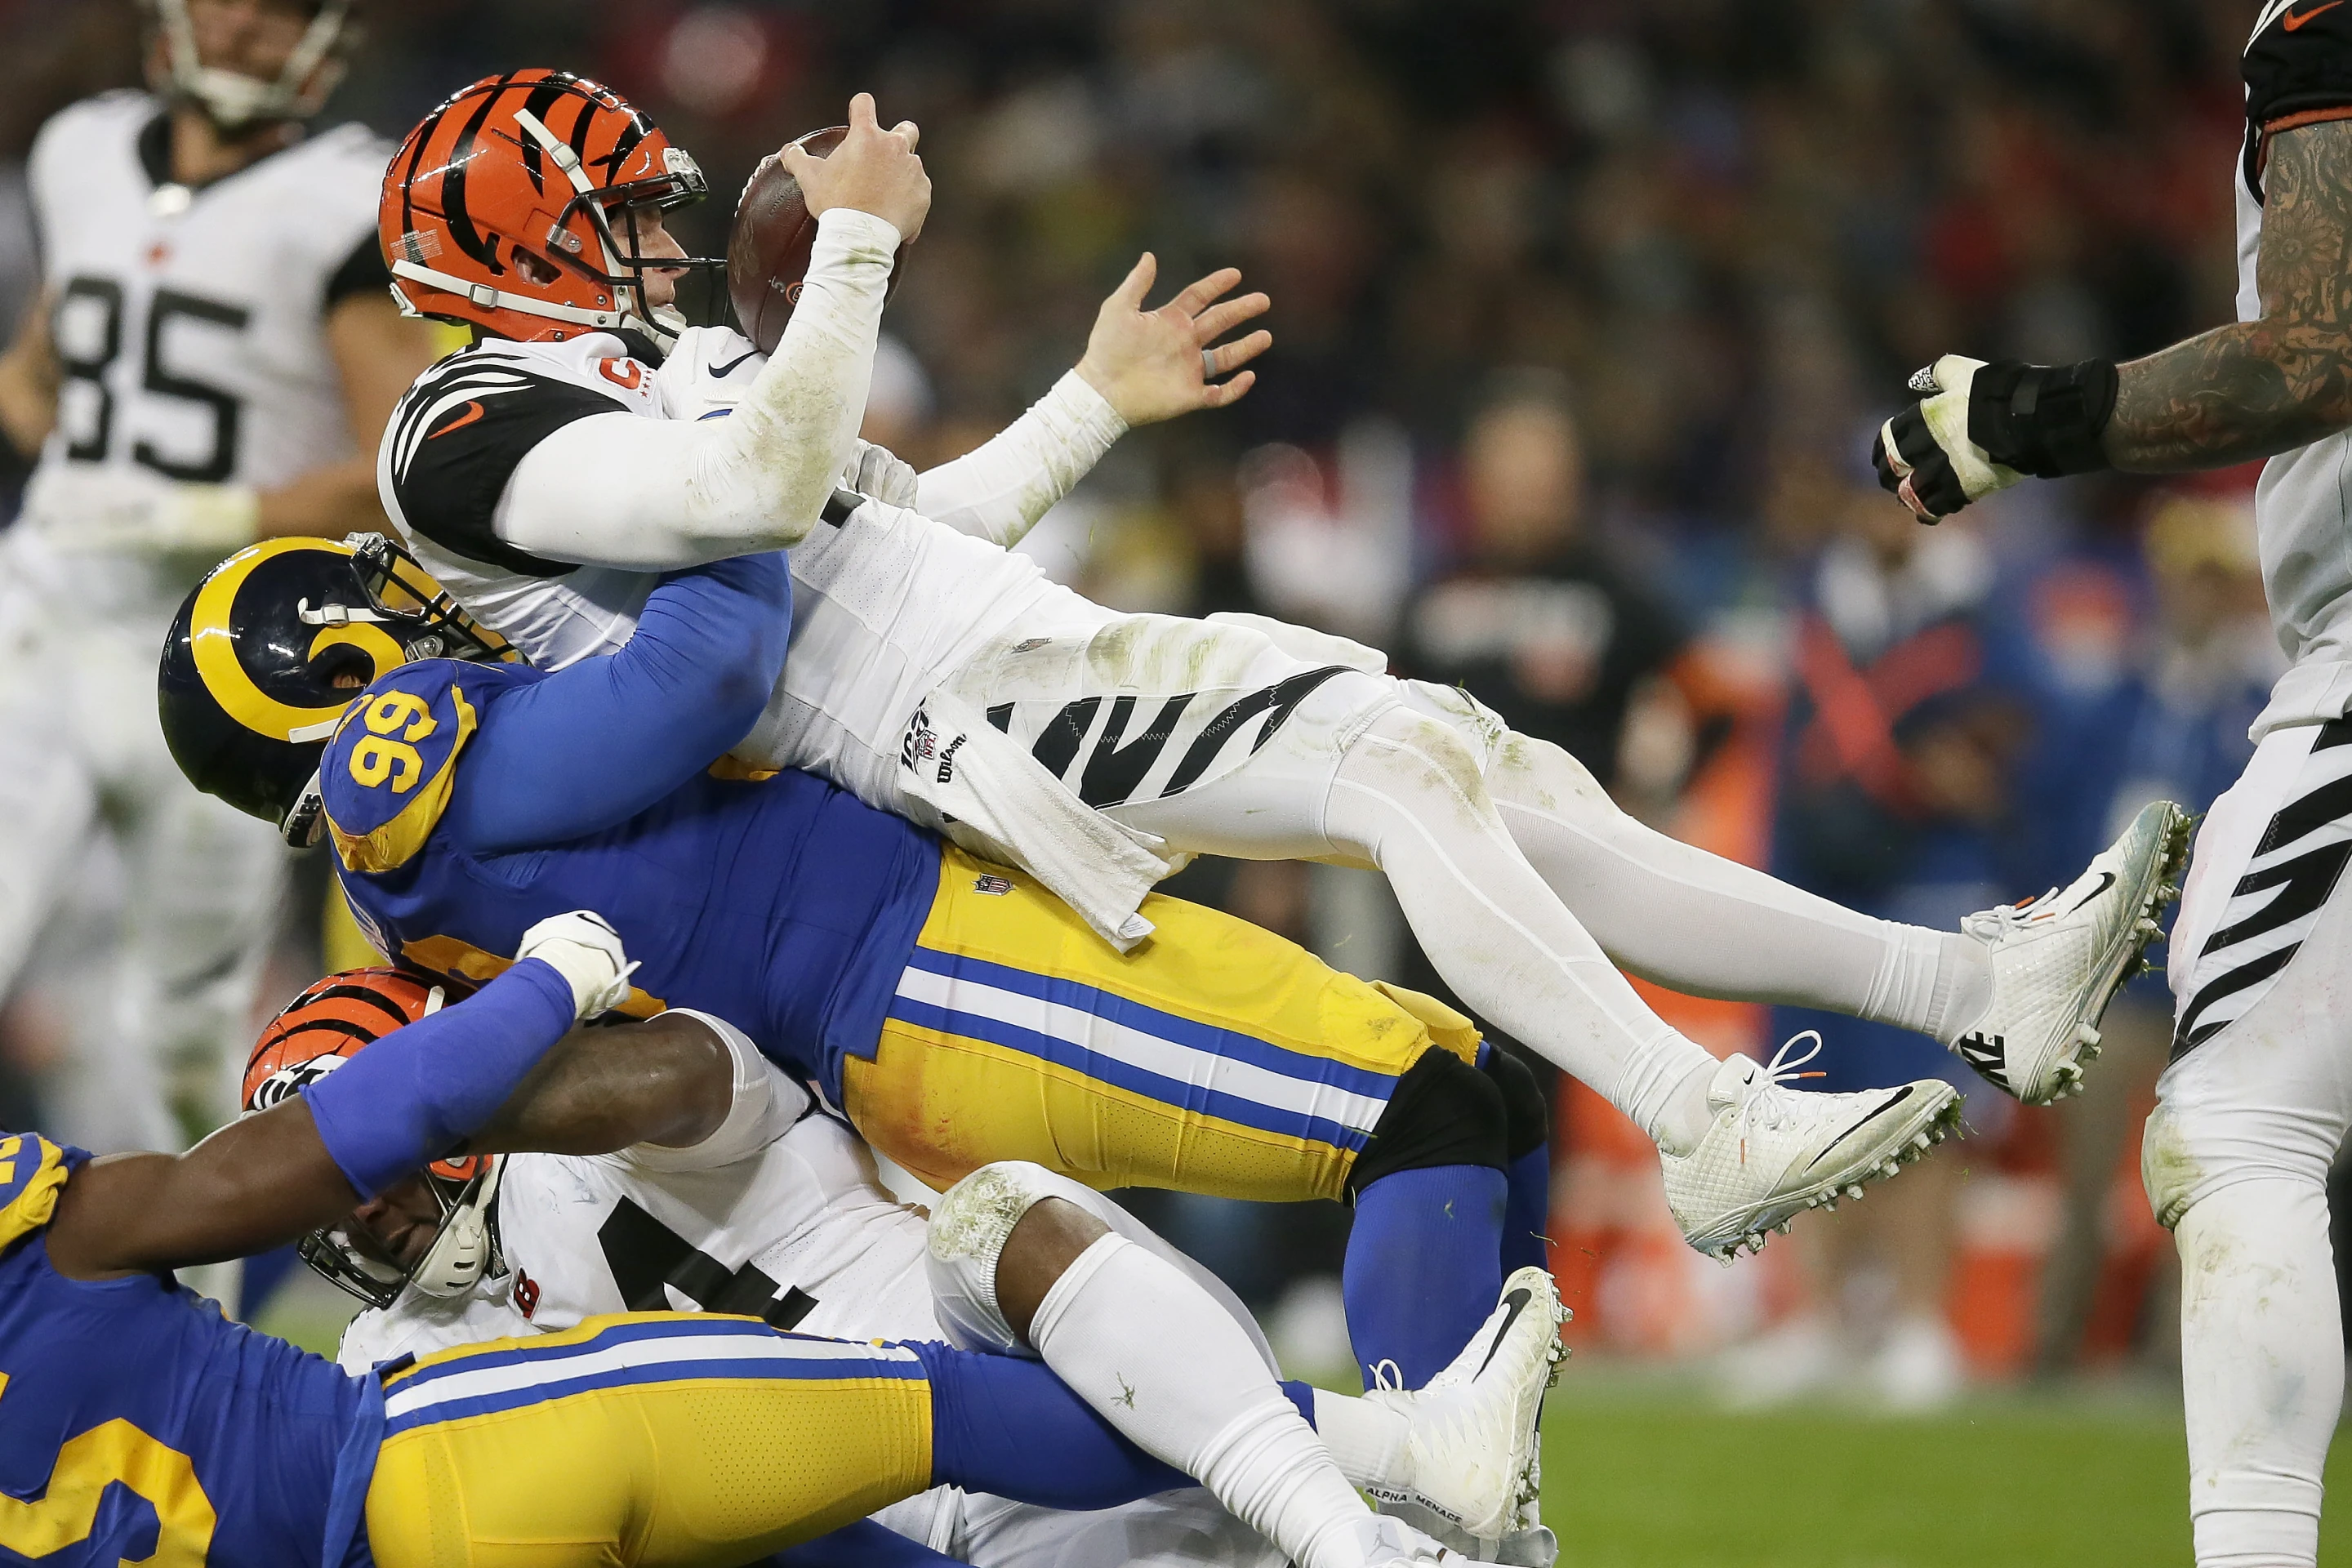 Defensive tackle Aaron Donald (#99) of the Los Angeles Rams sacks quarterback Joe Burrow of the Cincinnati Bengals in Super Bowl LVI at SoFi Stadium in Inglewood, California, U.S., February 13, 2022. /AP